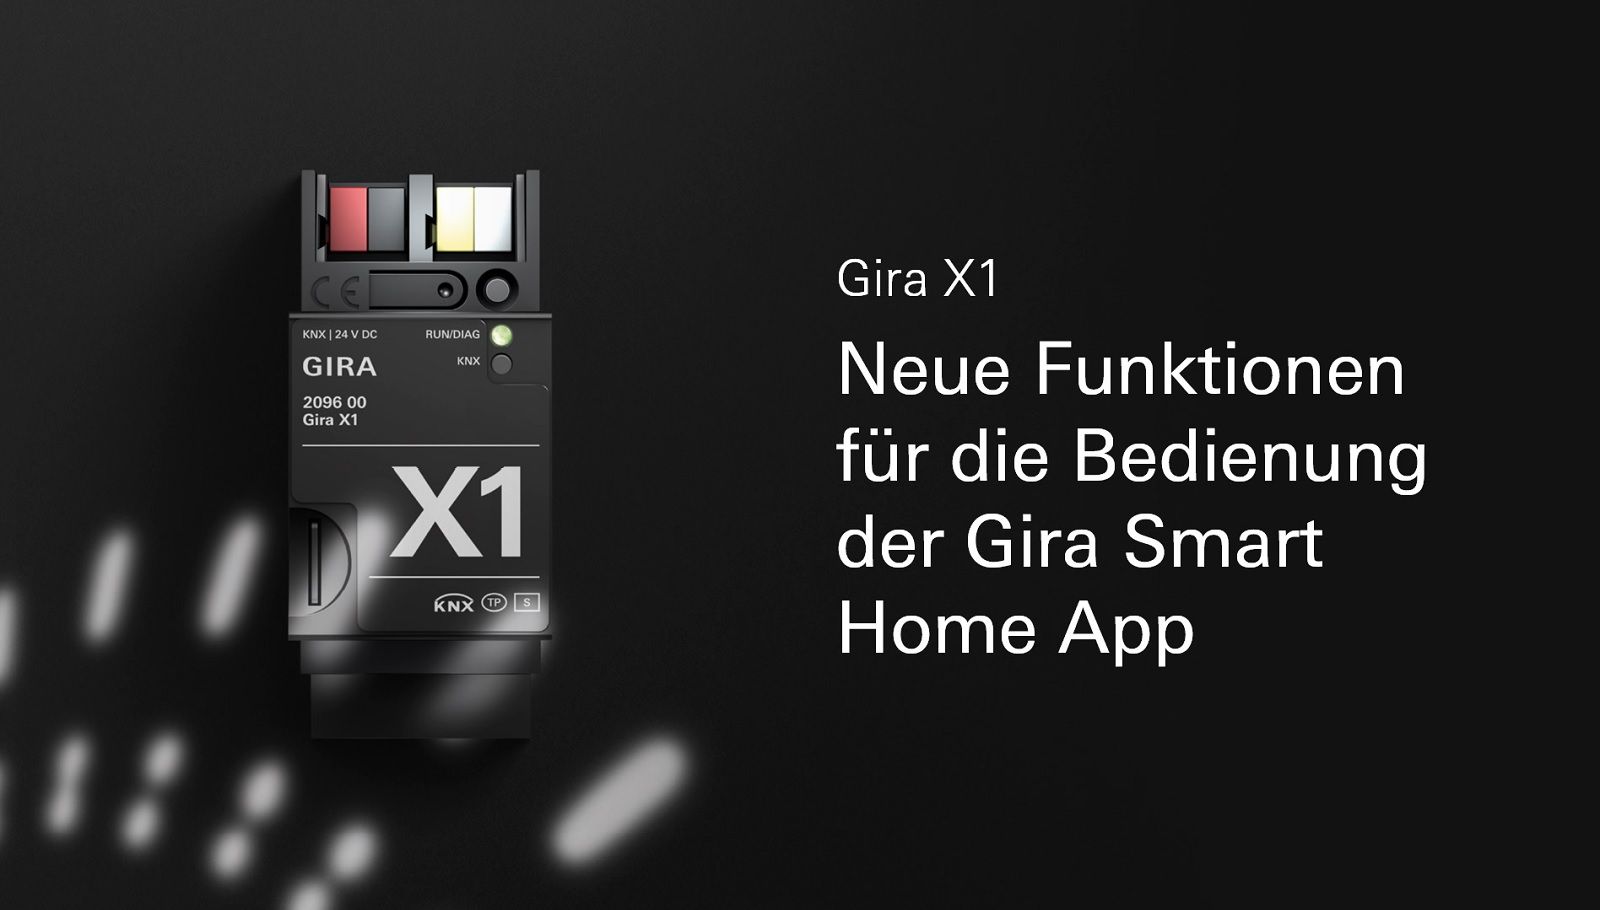 Gira X1 Update Videoteaser für neue Funktionen 